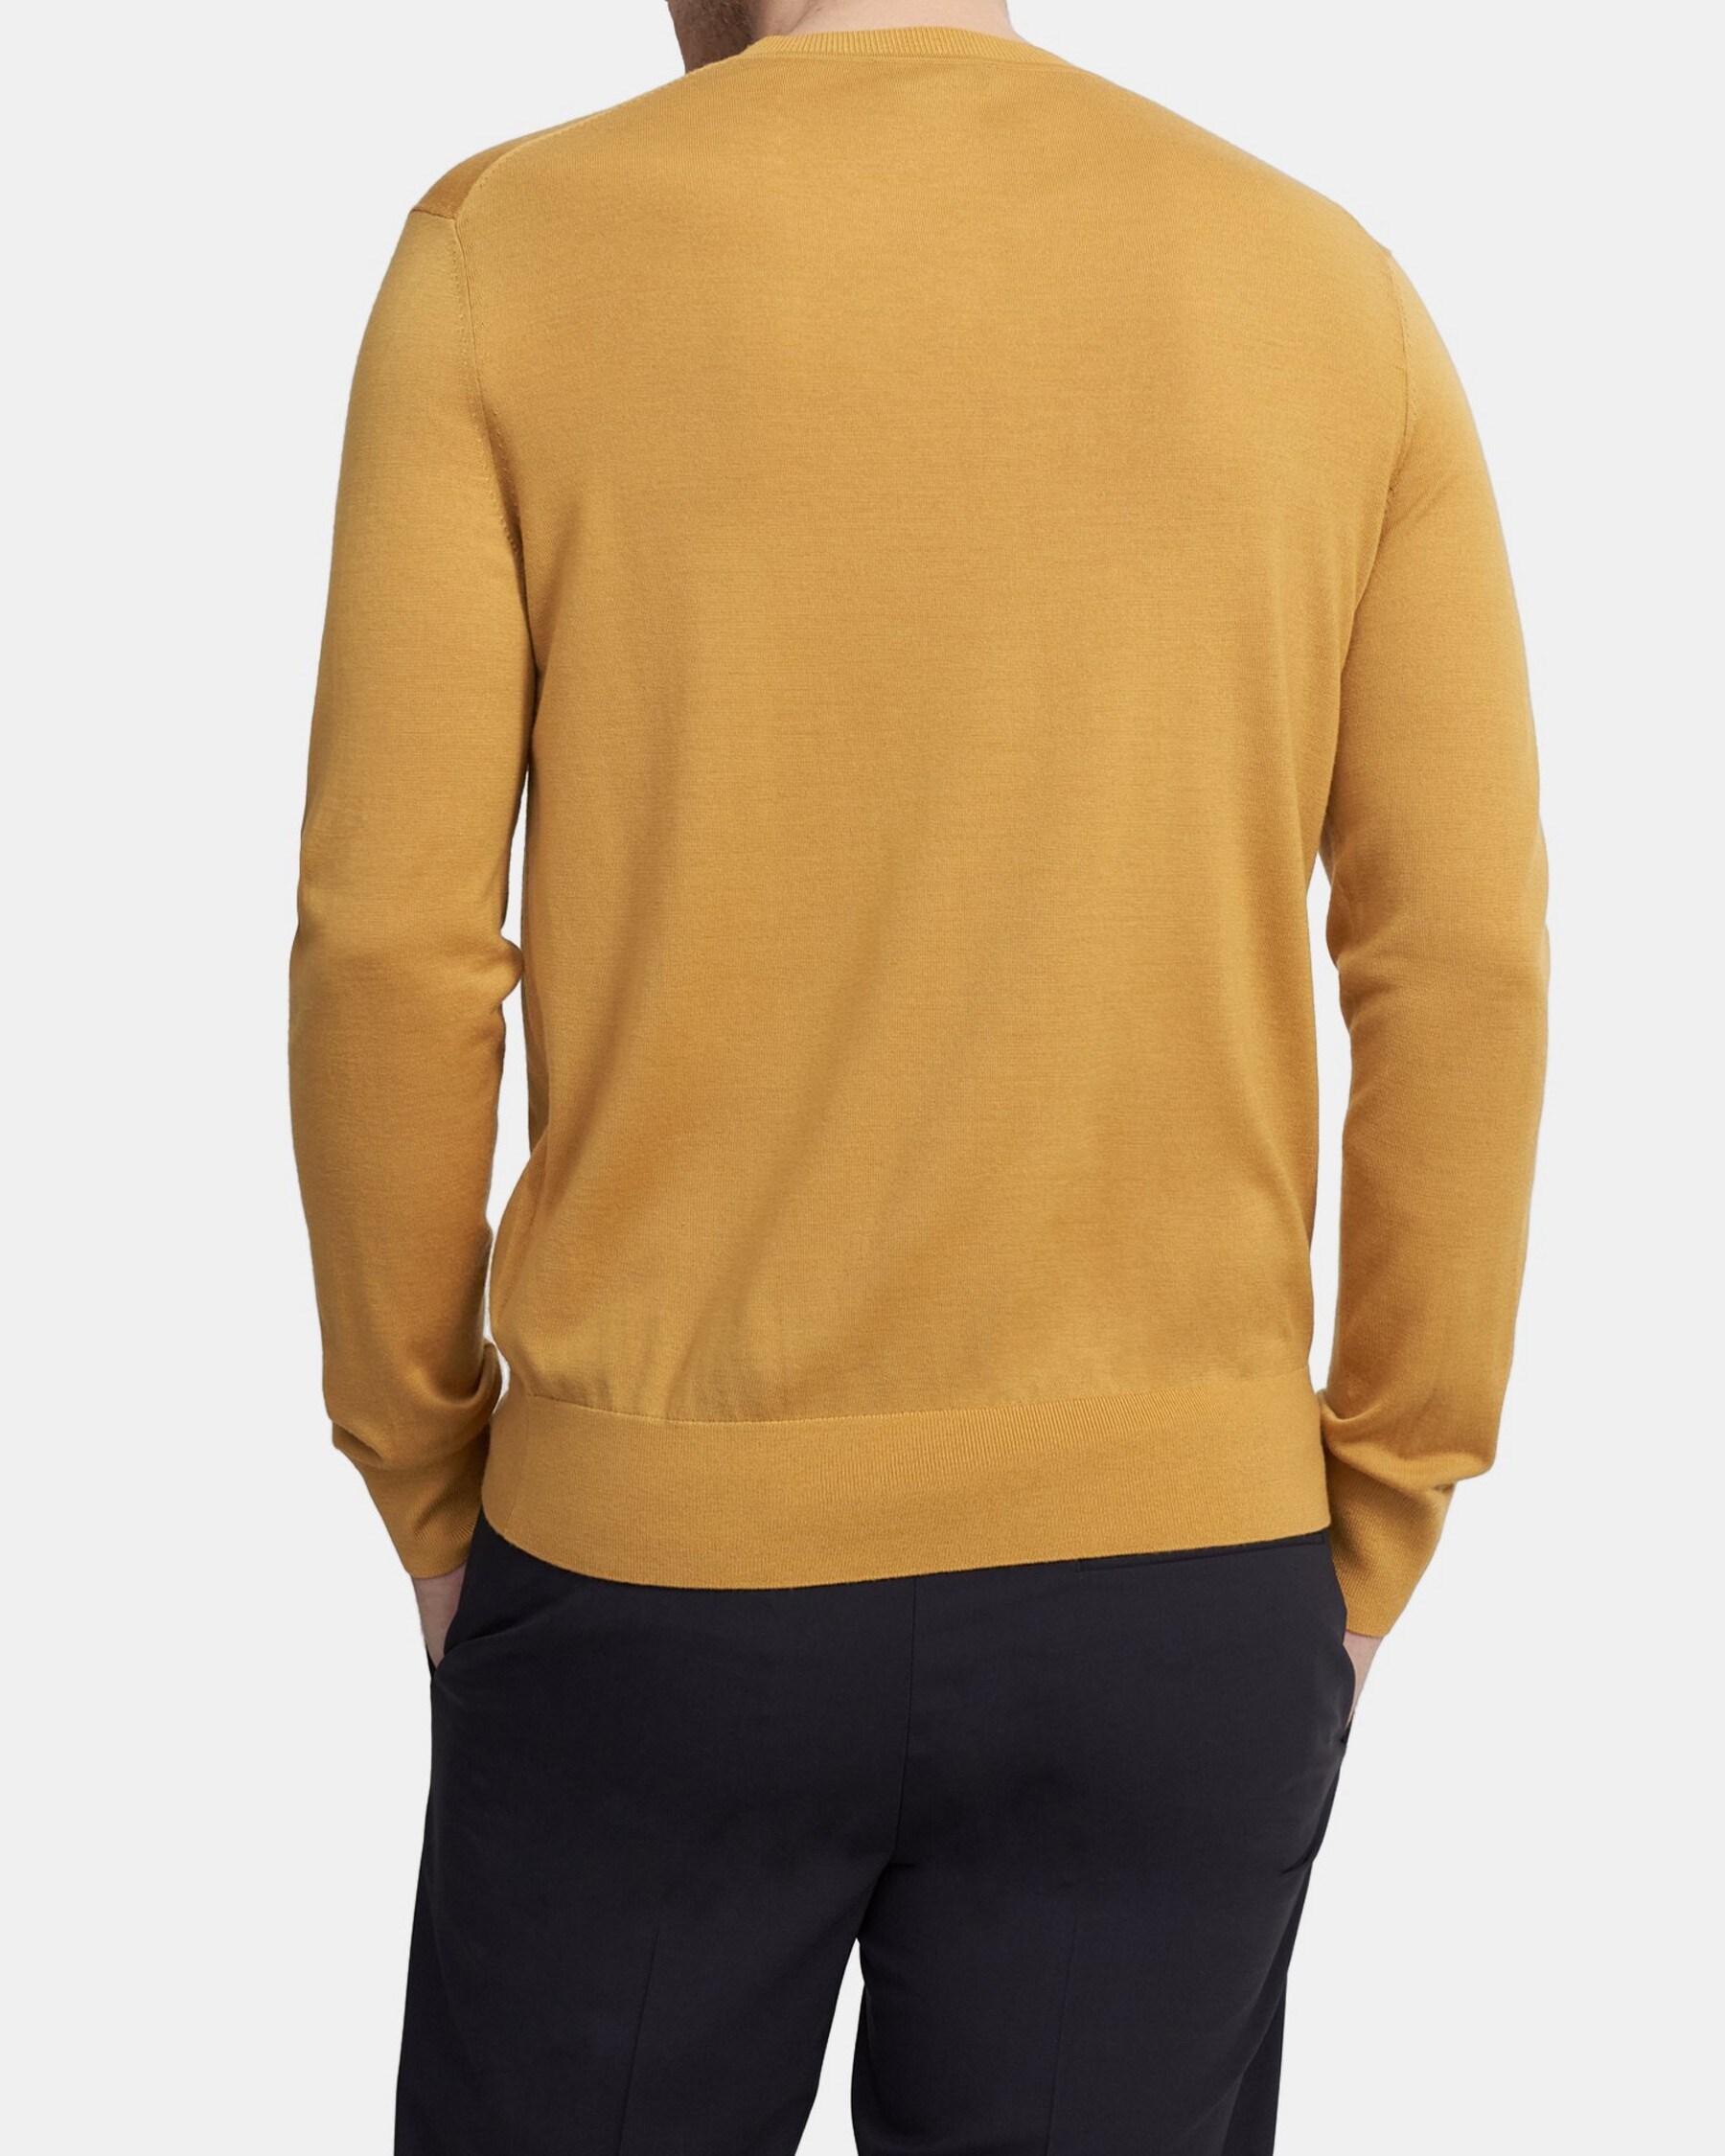 Crewneck Sweater in Regal Wool